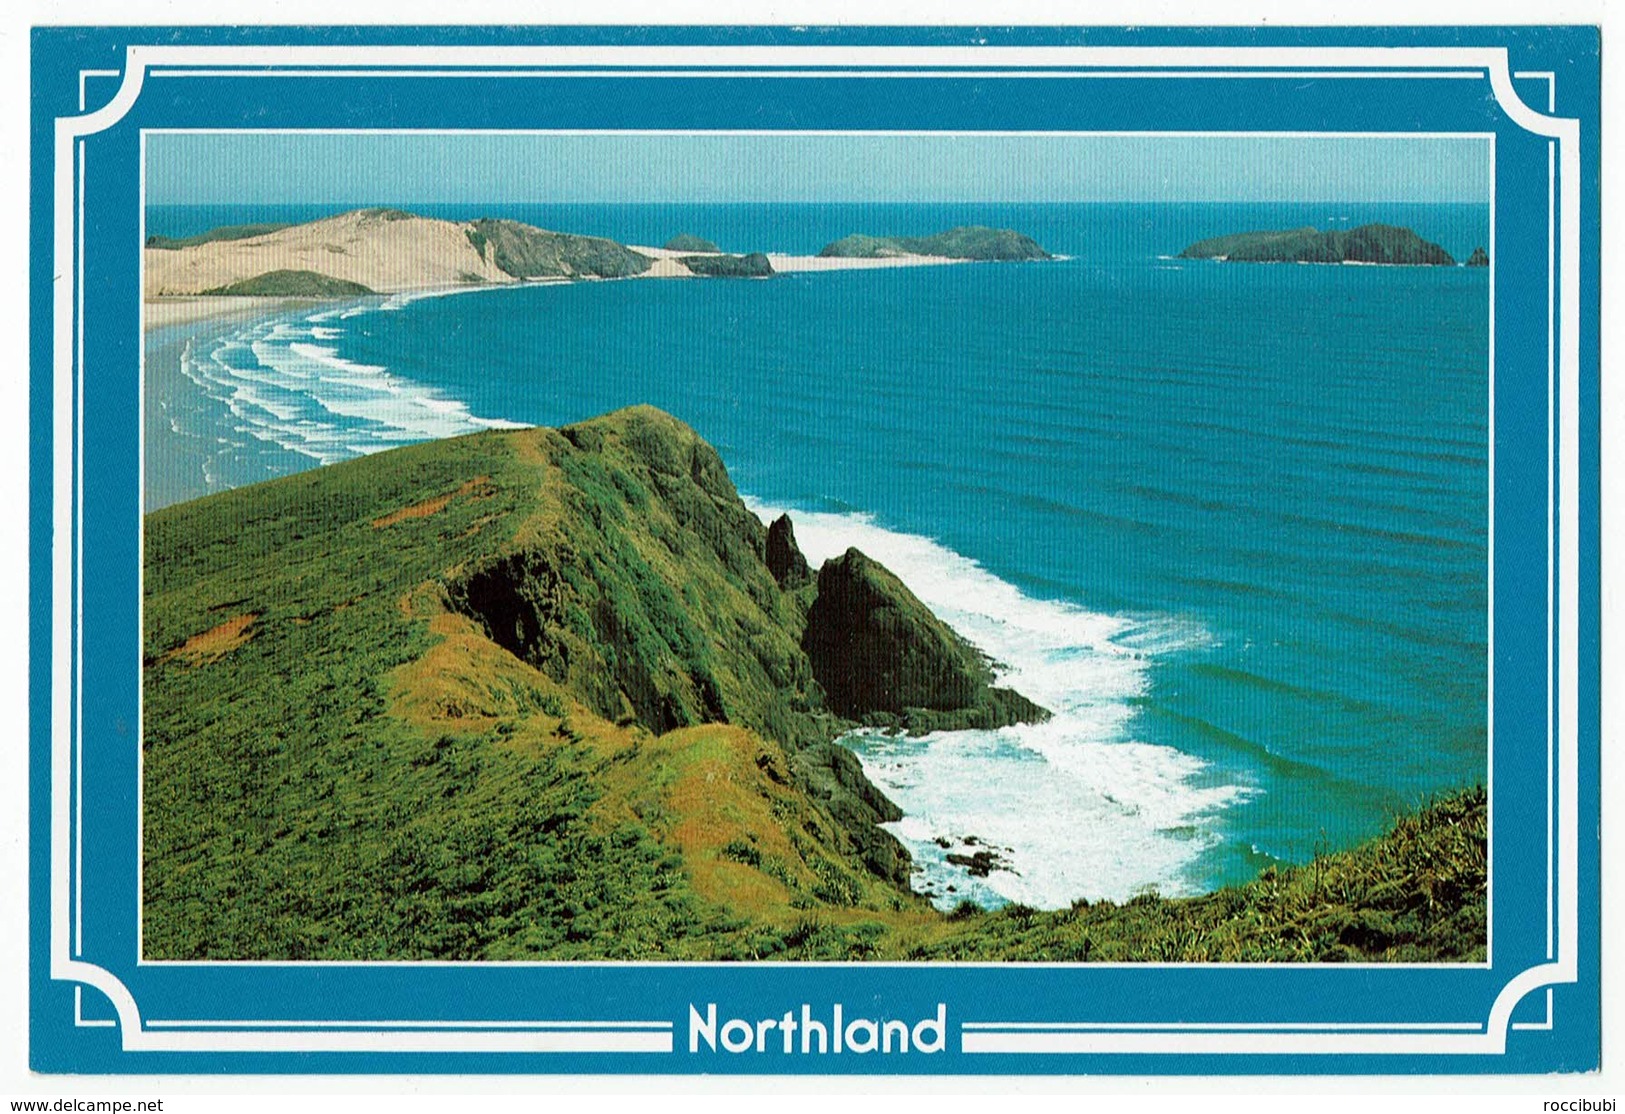 Neuseeland, New Zealand, Northland - Neuseeland